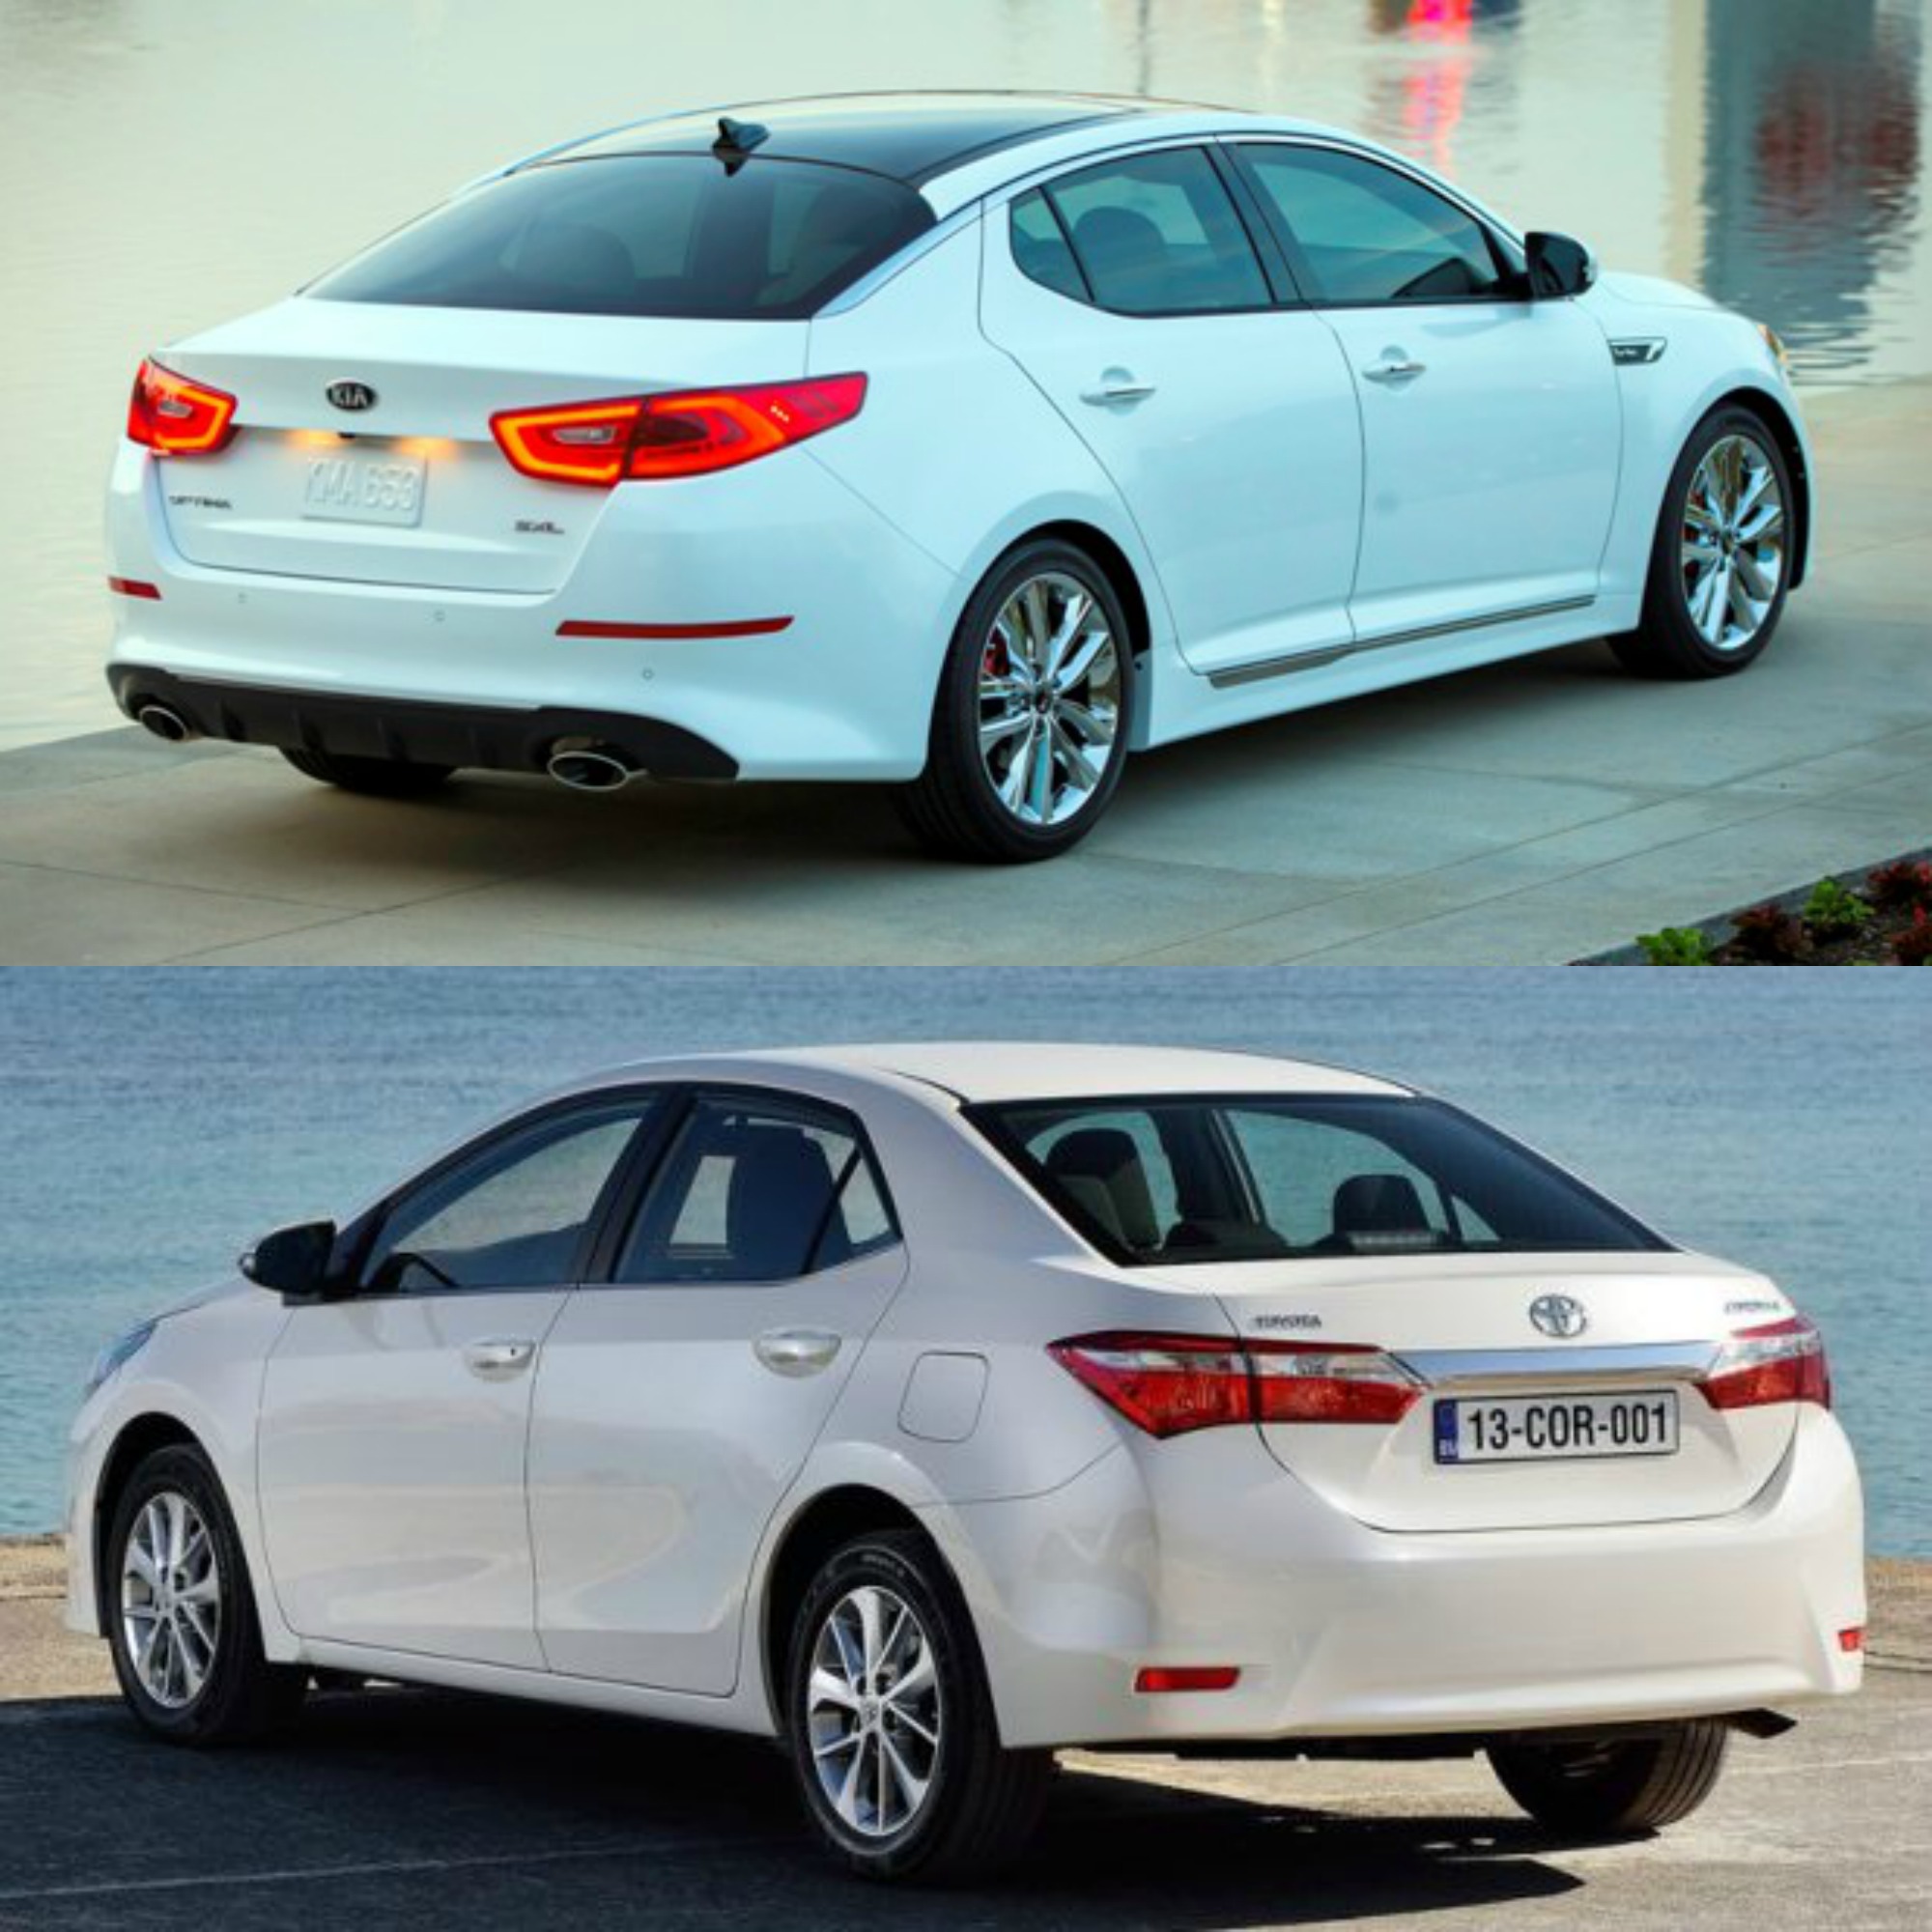 Khi so sánh ô tô, cả hai mẫu sedan này đều có những thay đổi ấn tượng về động cơ